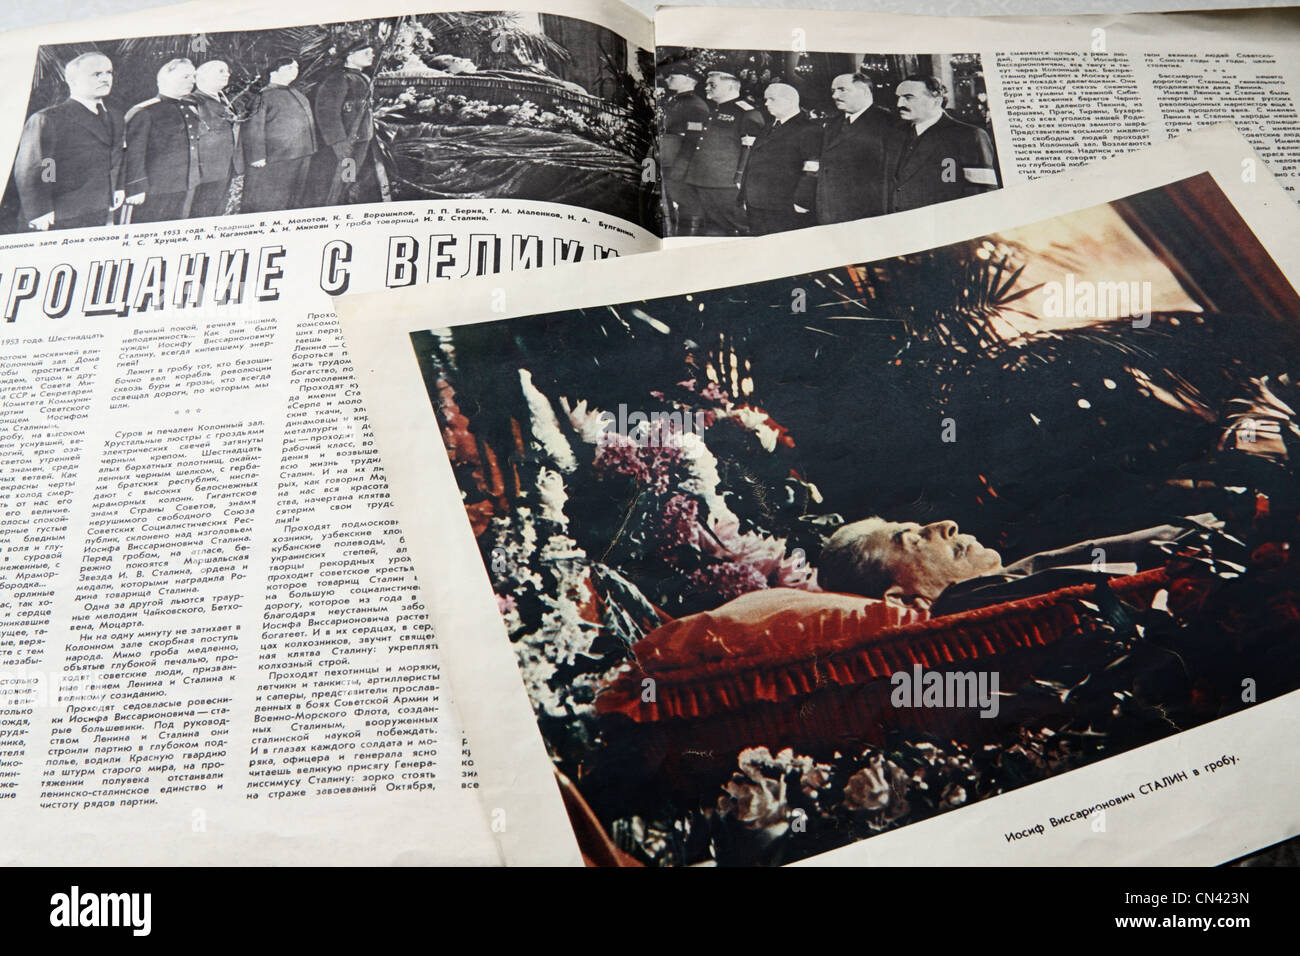 Informazioni e foto per la morte di Joseph Stalin nel journal "oviet unione" 1953 Foto Stock